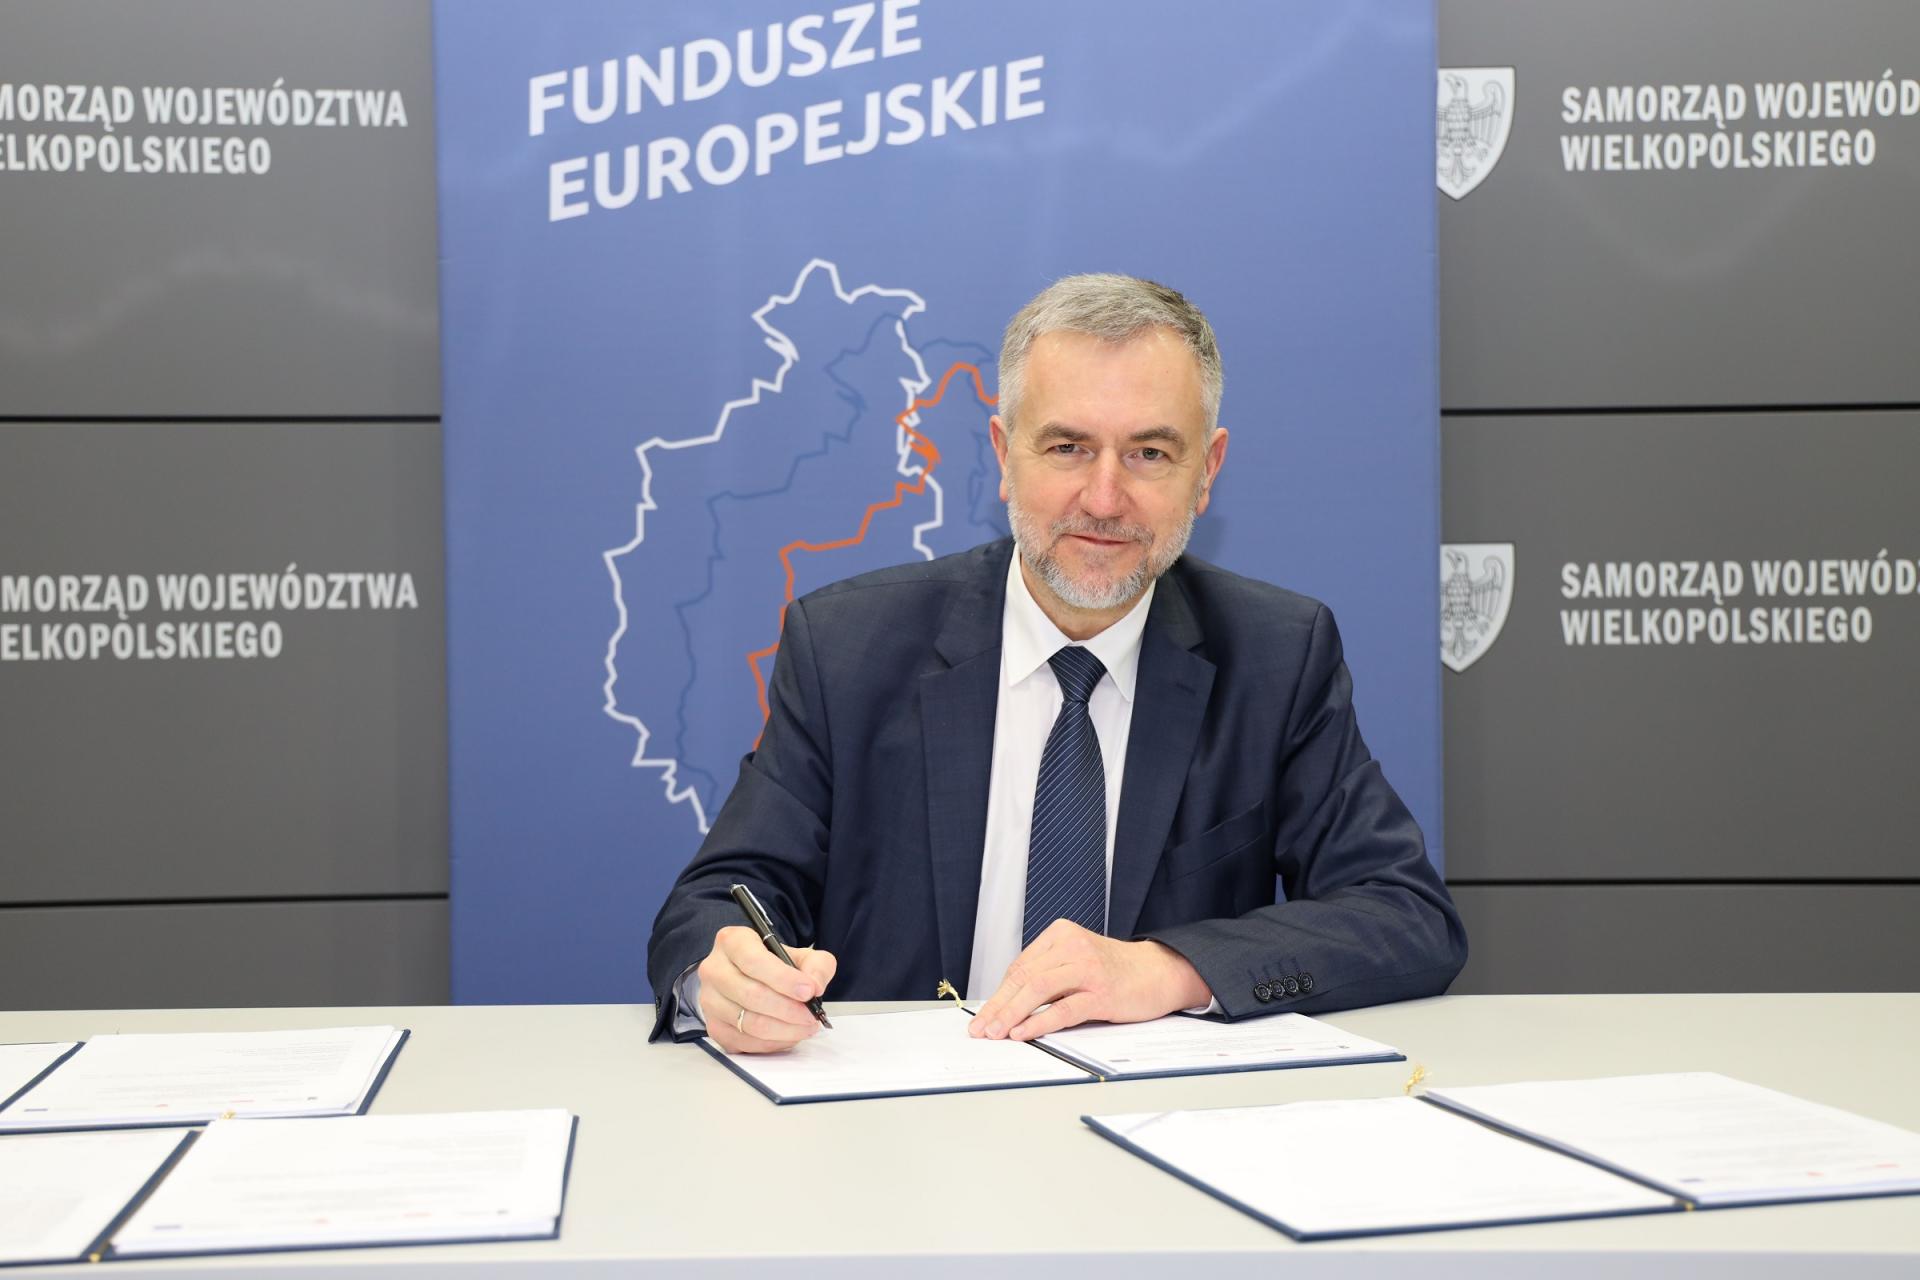  Wielkopolskie gminy za unijne pieniądze z WRPO 2014+ budują nowoczesną infrastrukturę rowerową  - zobacz więcej